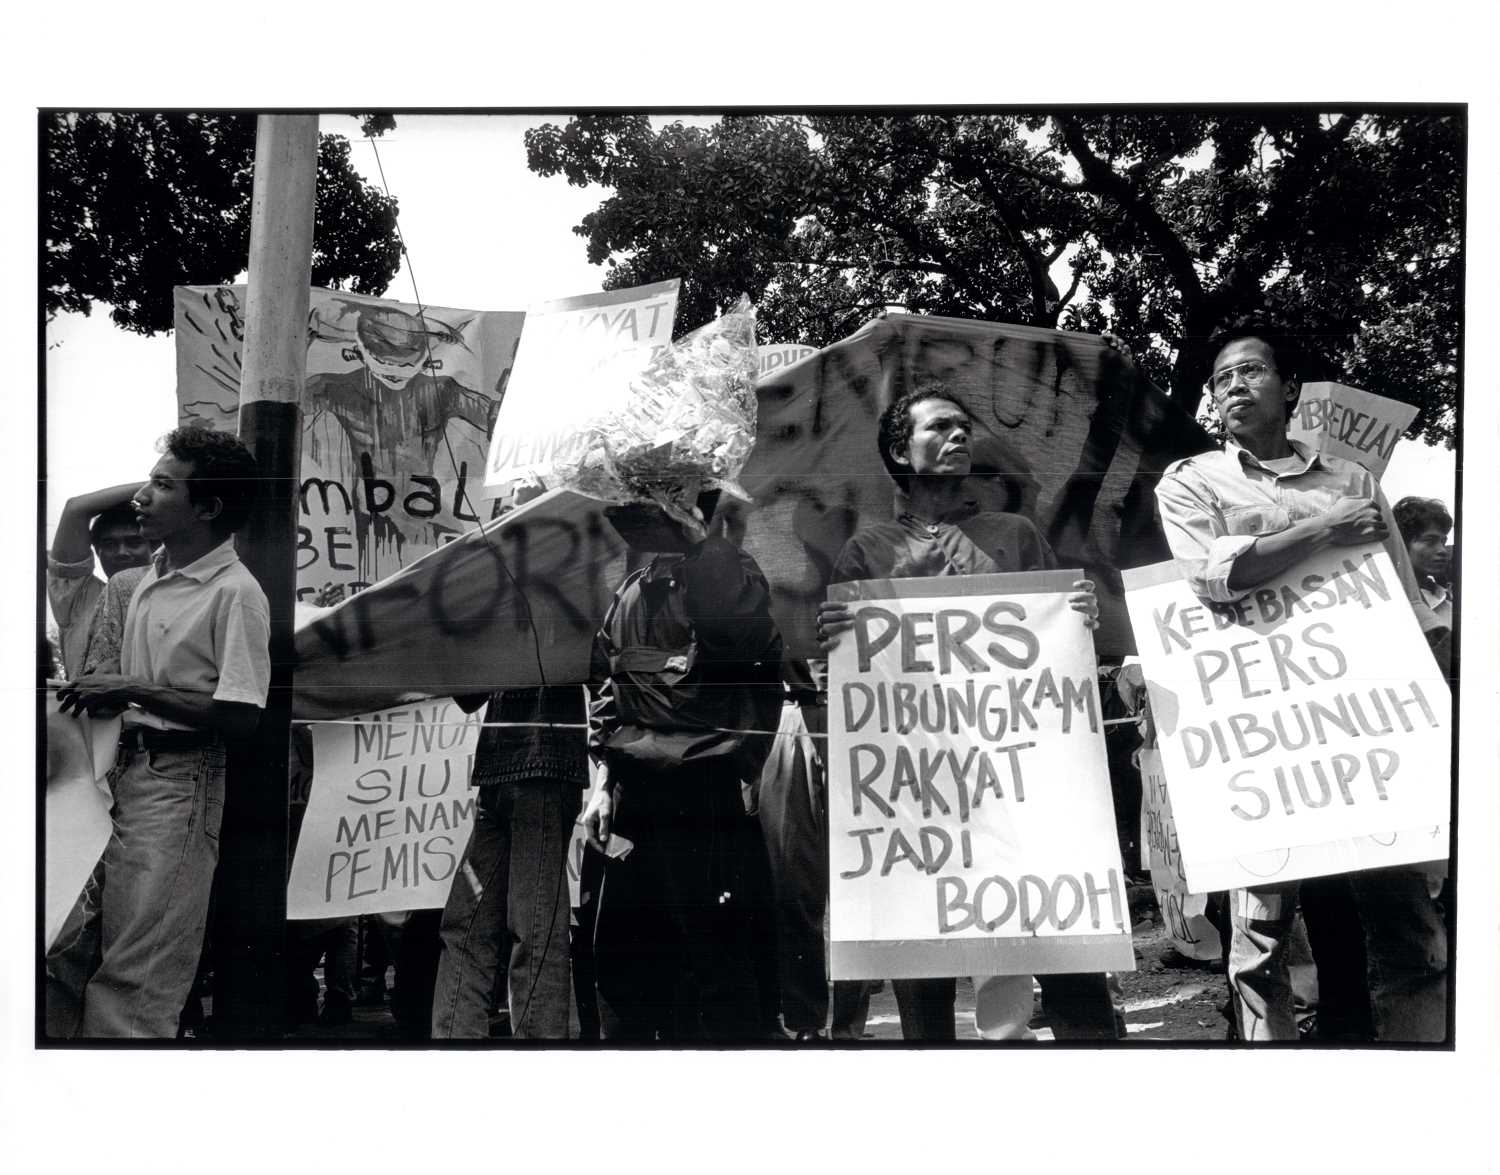 Jakarta, Juni 1994. Demonstrasi tolak pembredelan Tempo, Detik, dan Redaktur terekam oleh pewarta foto Gino F. Hadi.